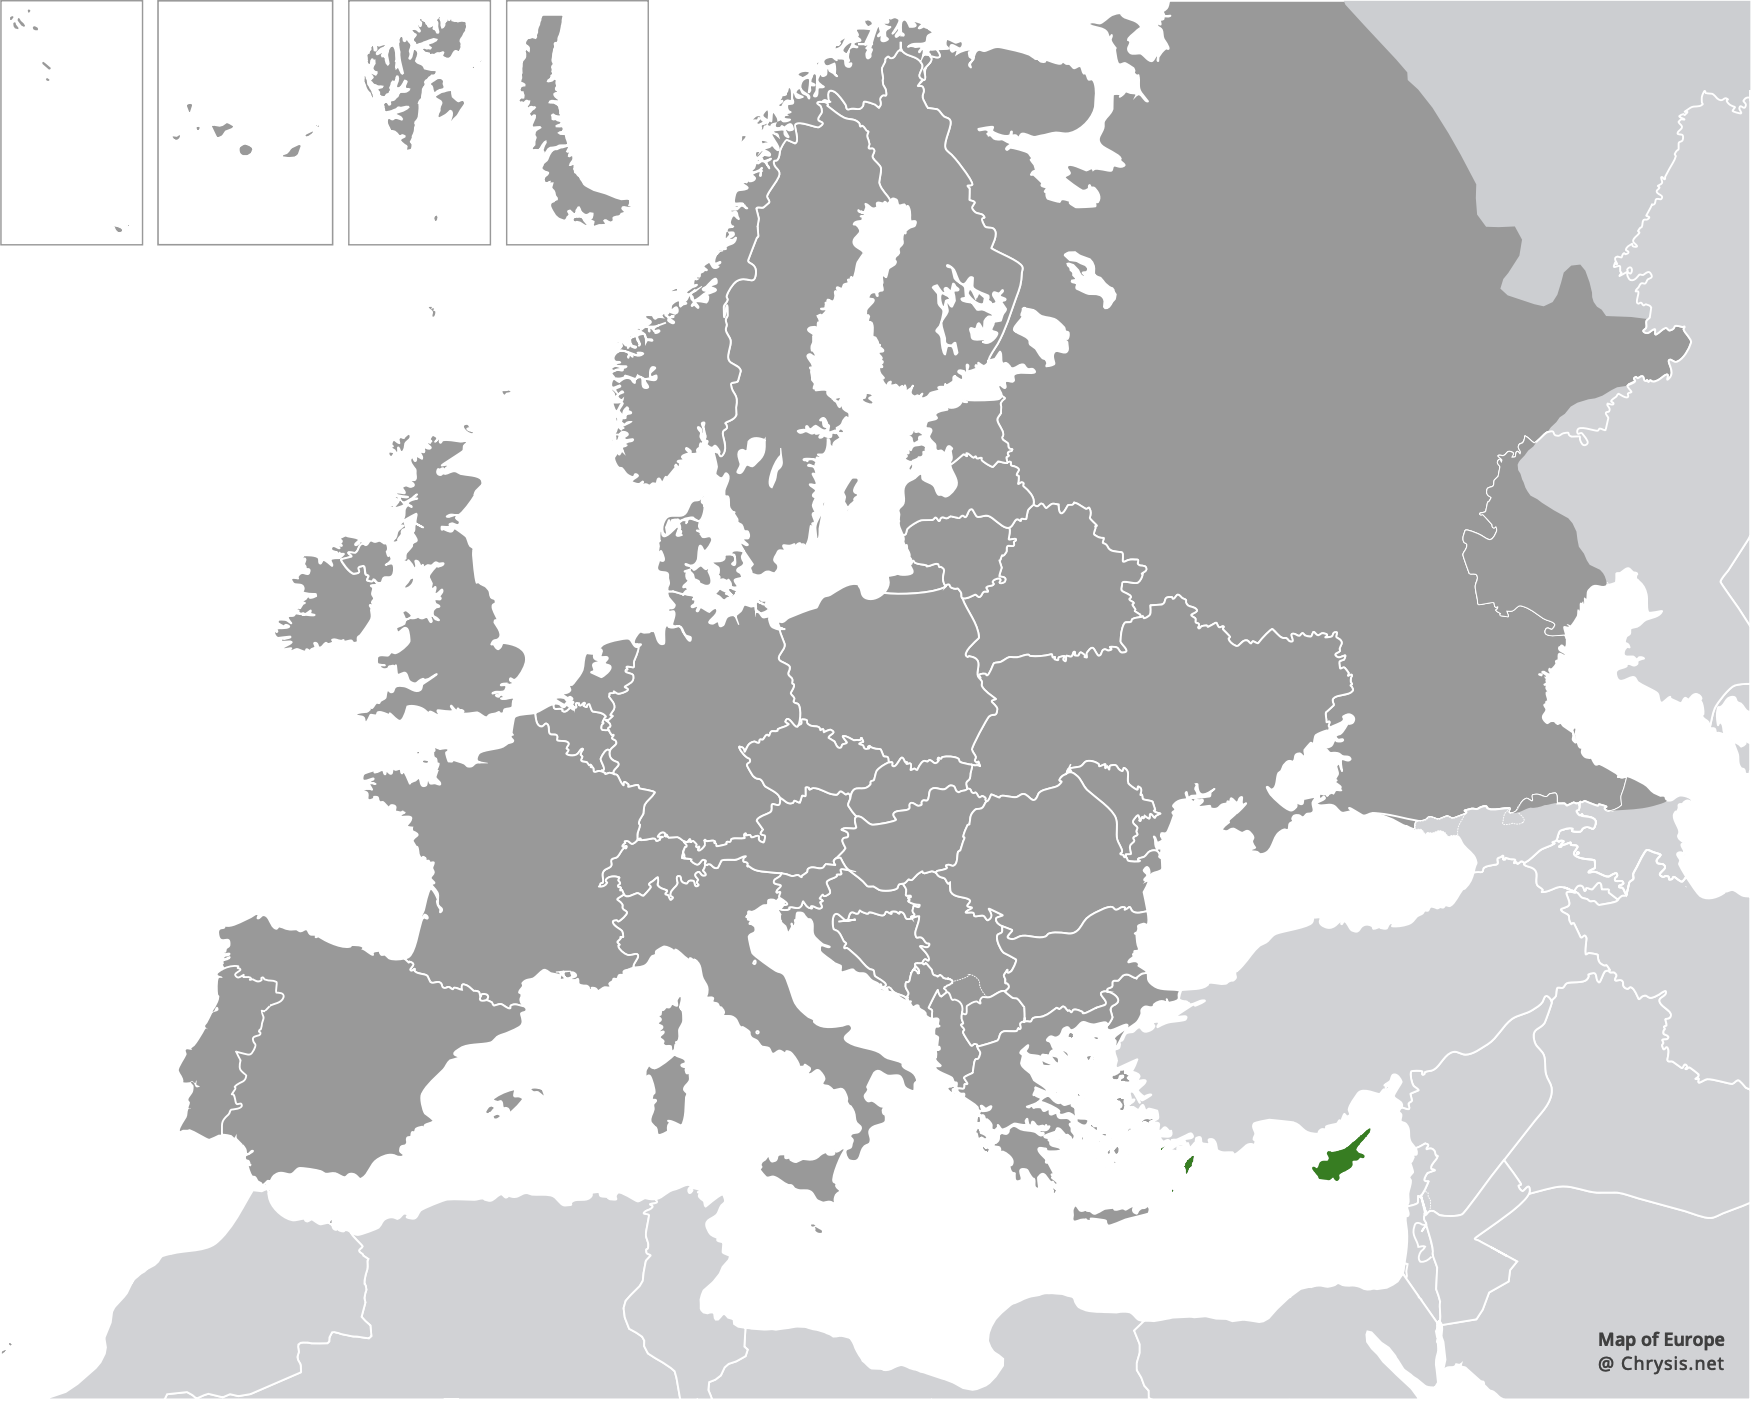 European distribution of Hedychrum aureicolle rhodicyprium